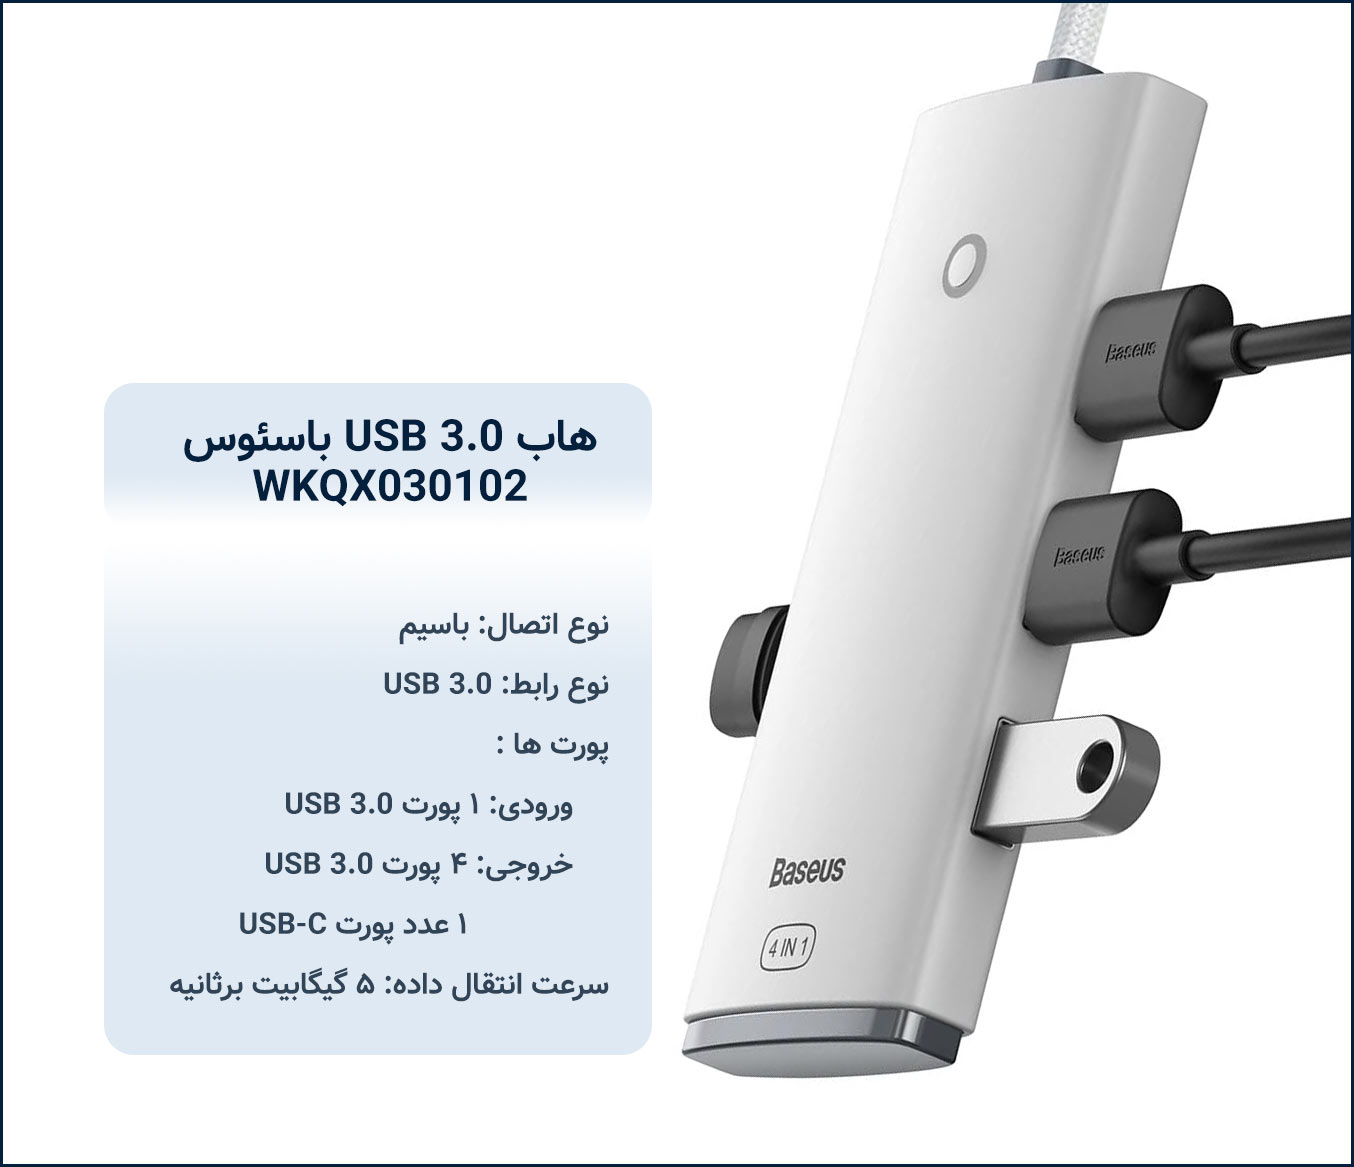 هاب USB 3.0 باسئوس Baseus WKQX030102